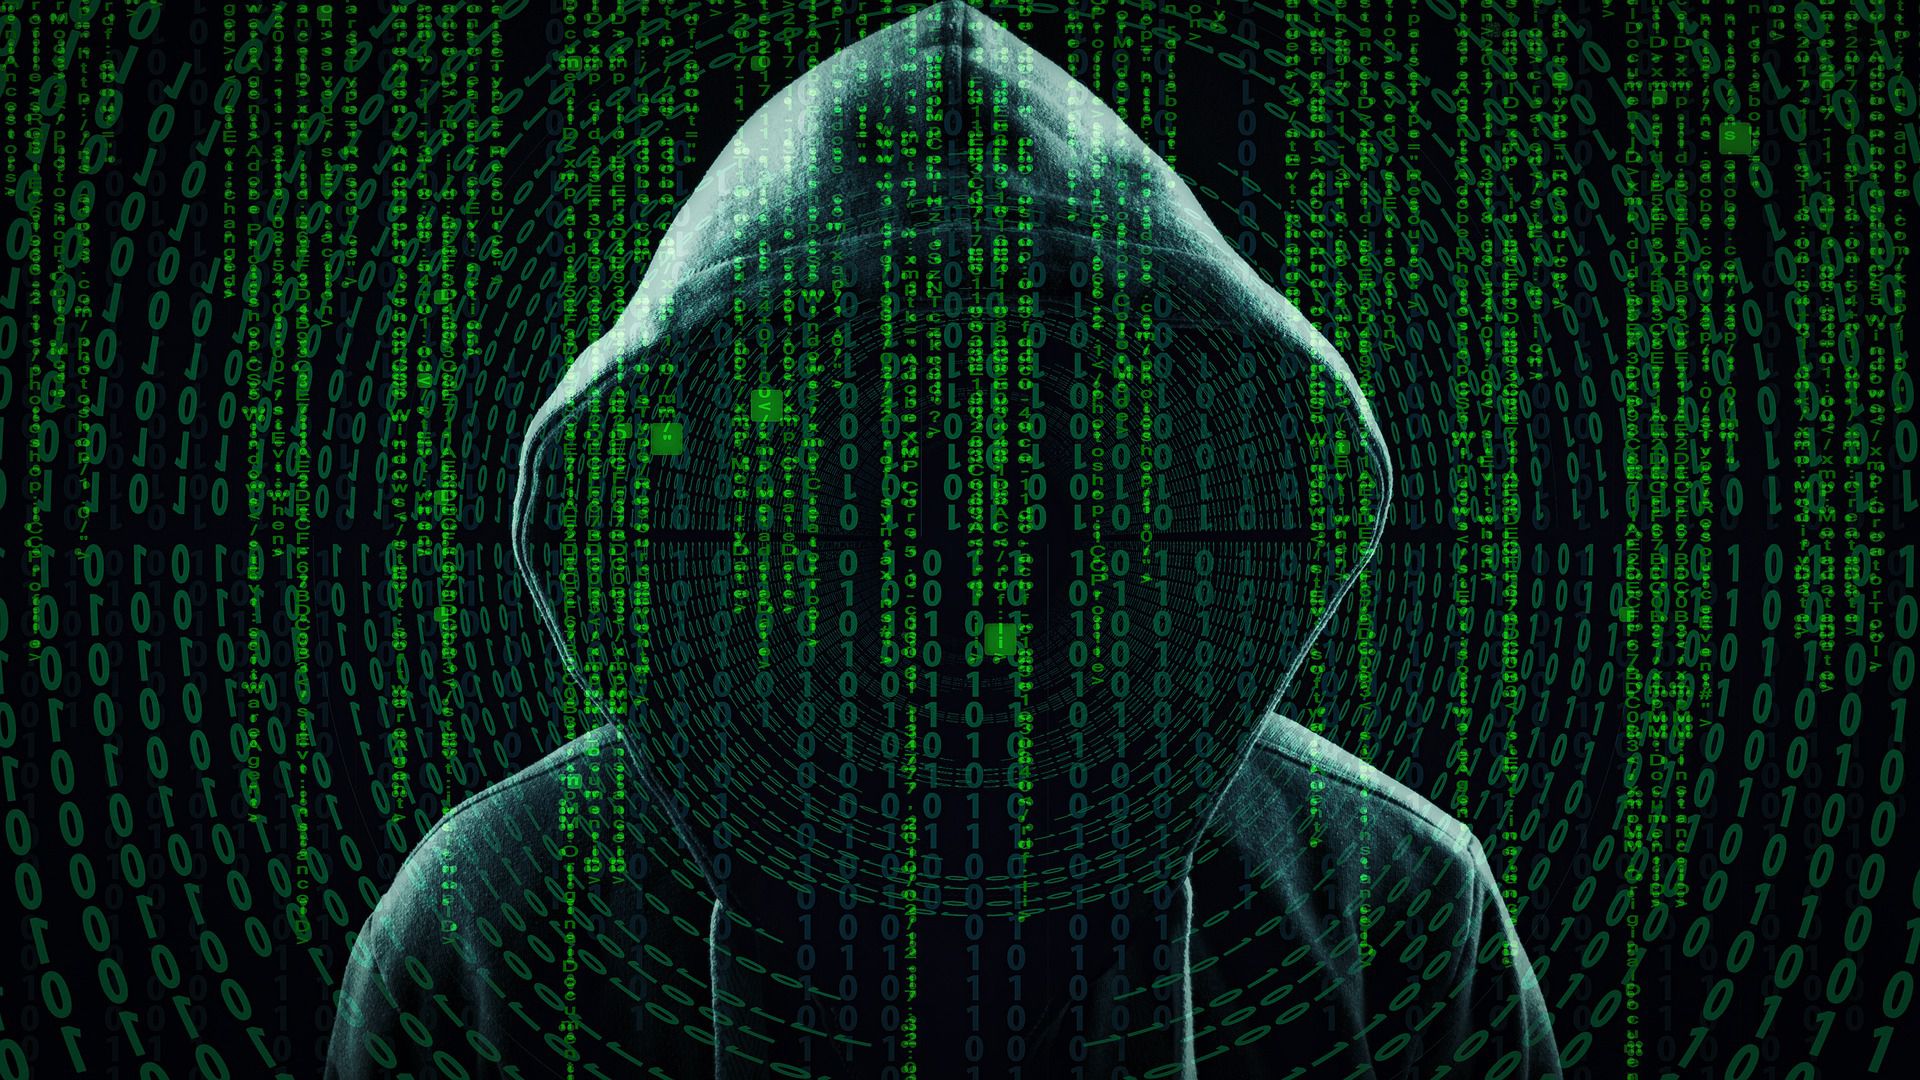 zakapturzona postać ludzka, na pierwszym planie ciągi cyfr i liczb; całość symbolizuje hakera w sieci